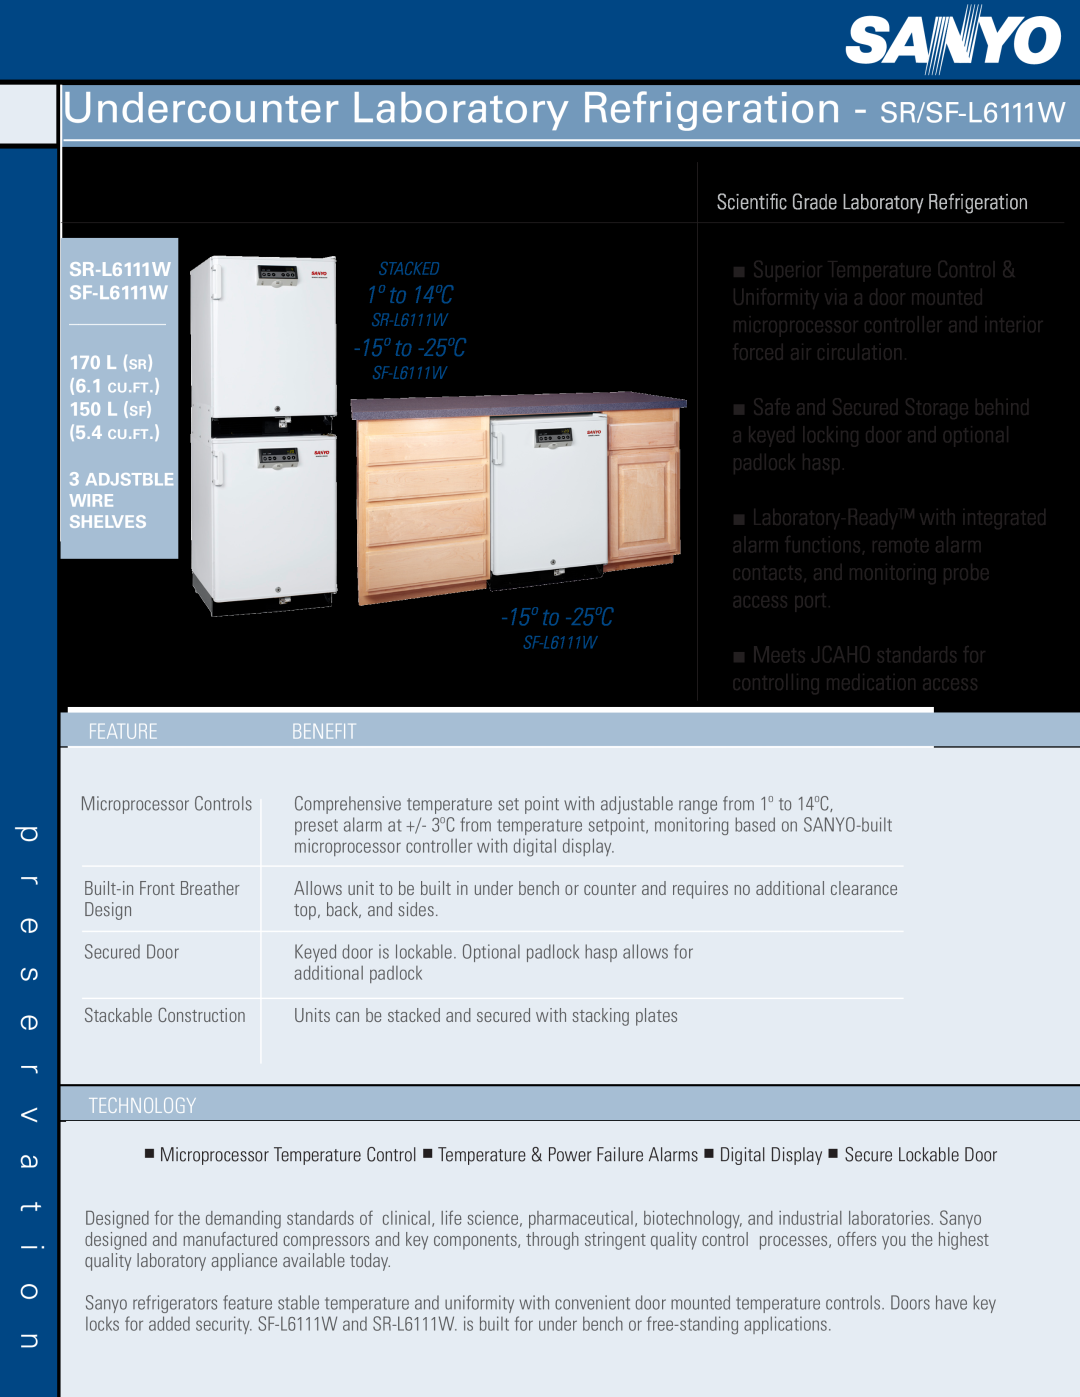 Sanyo manual p r e s e r v a t i o n, Undercounter Laboratory Refrigeration - SR/SF-L6111W, 15º to -25ºC 